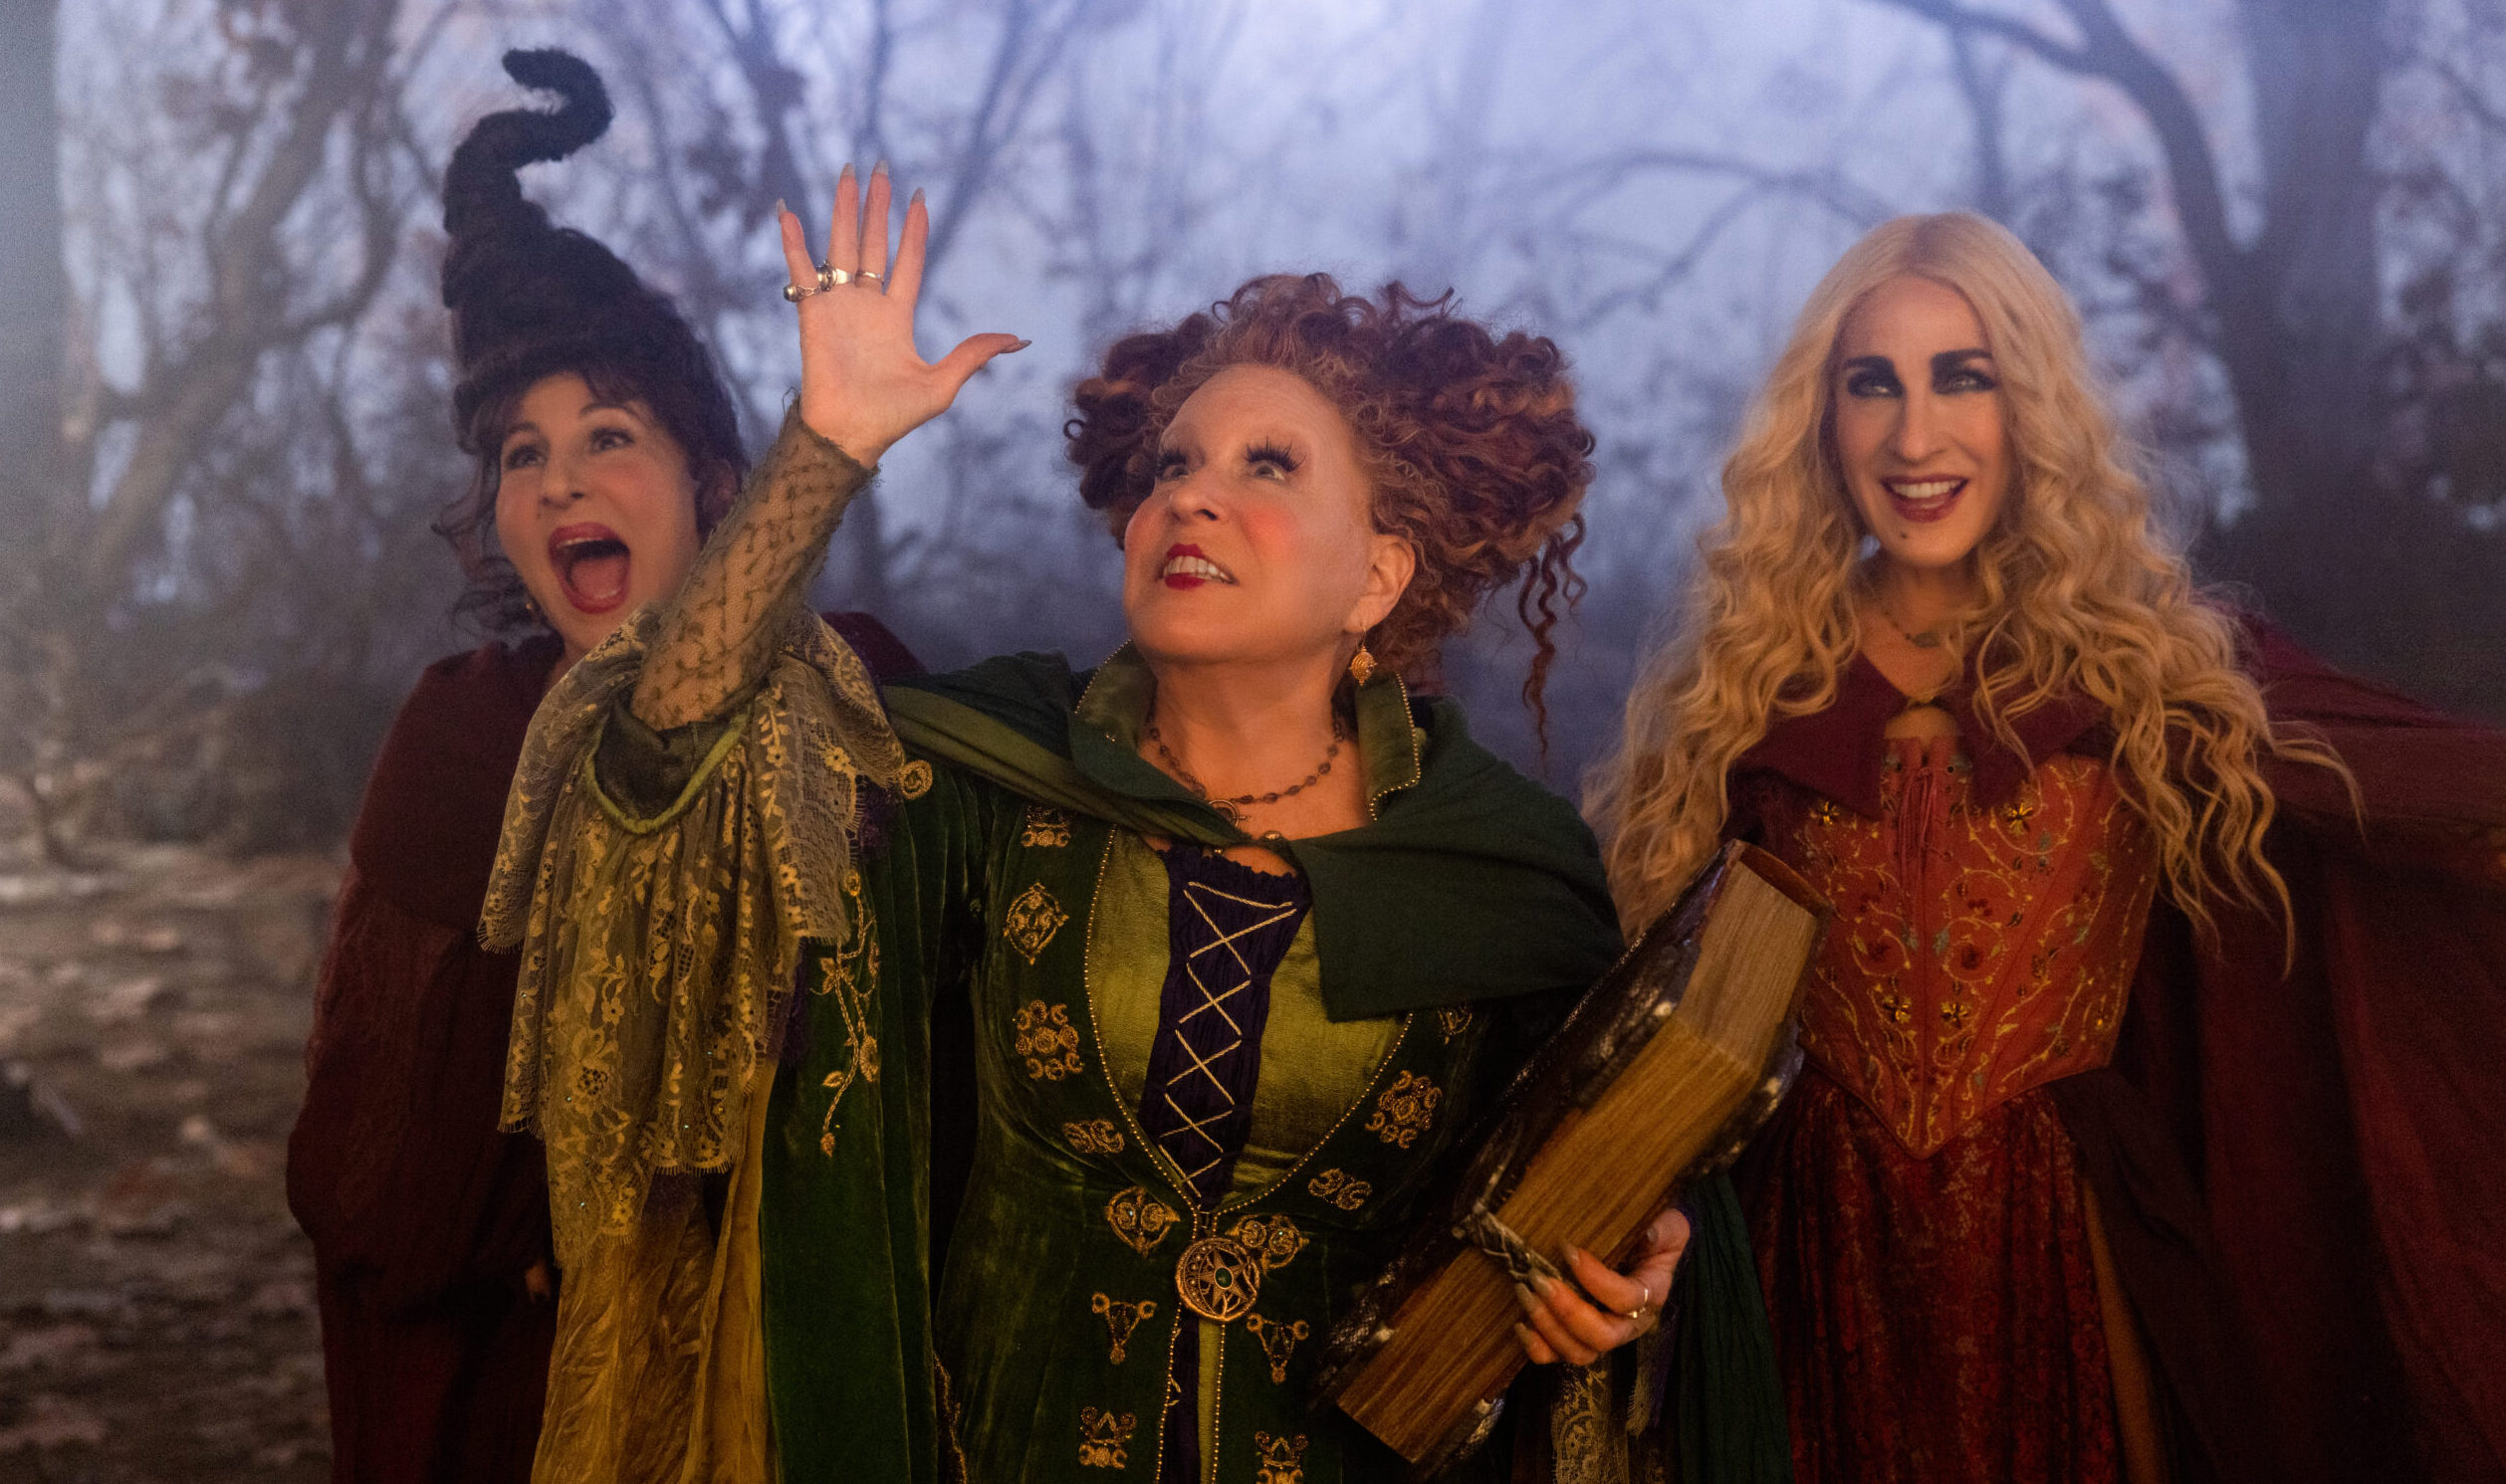 новости кино ведьмы афиша чтопосмотреть фокус-покус сиквел Хэллоуин хоррор комедия